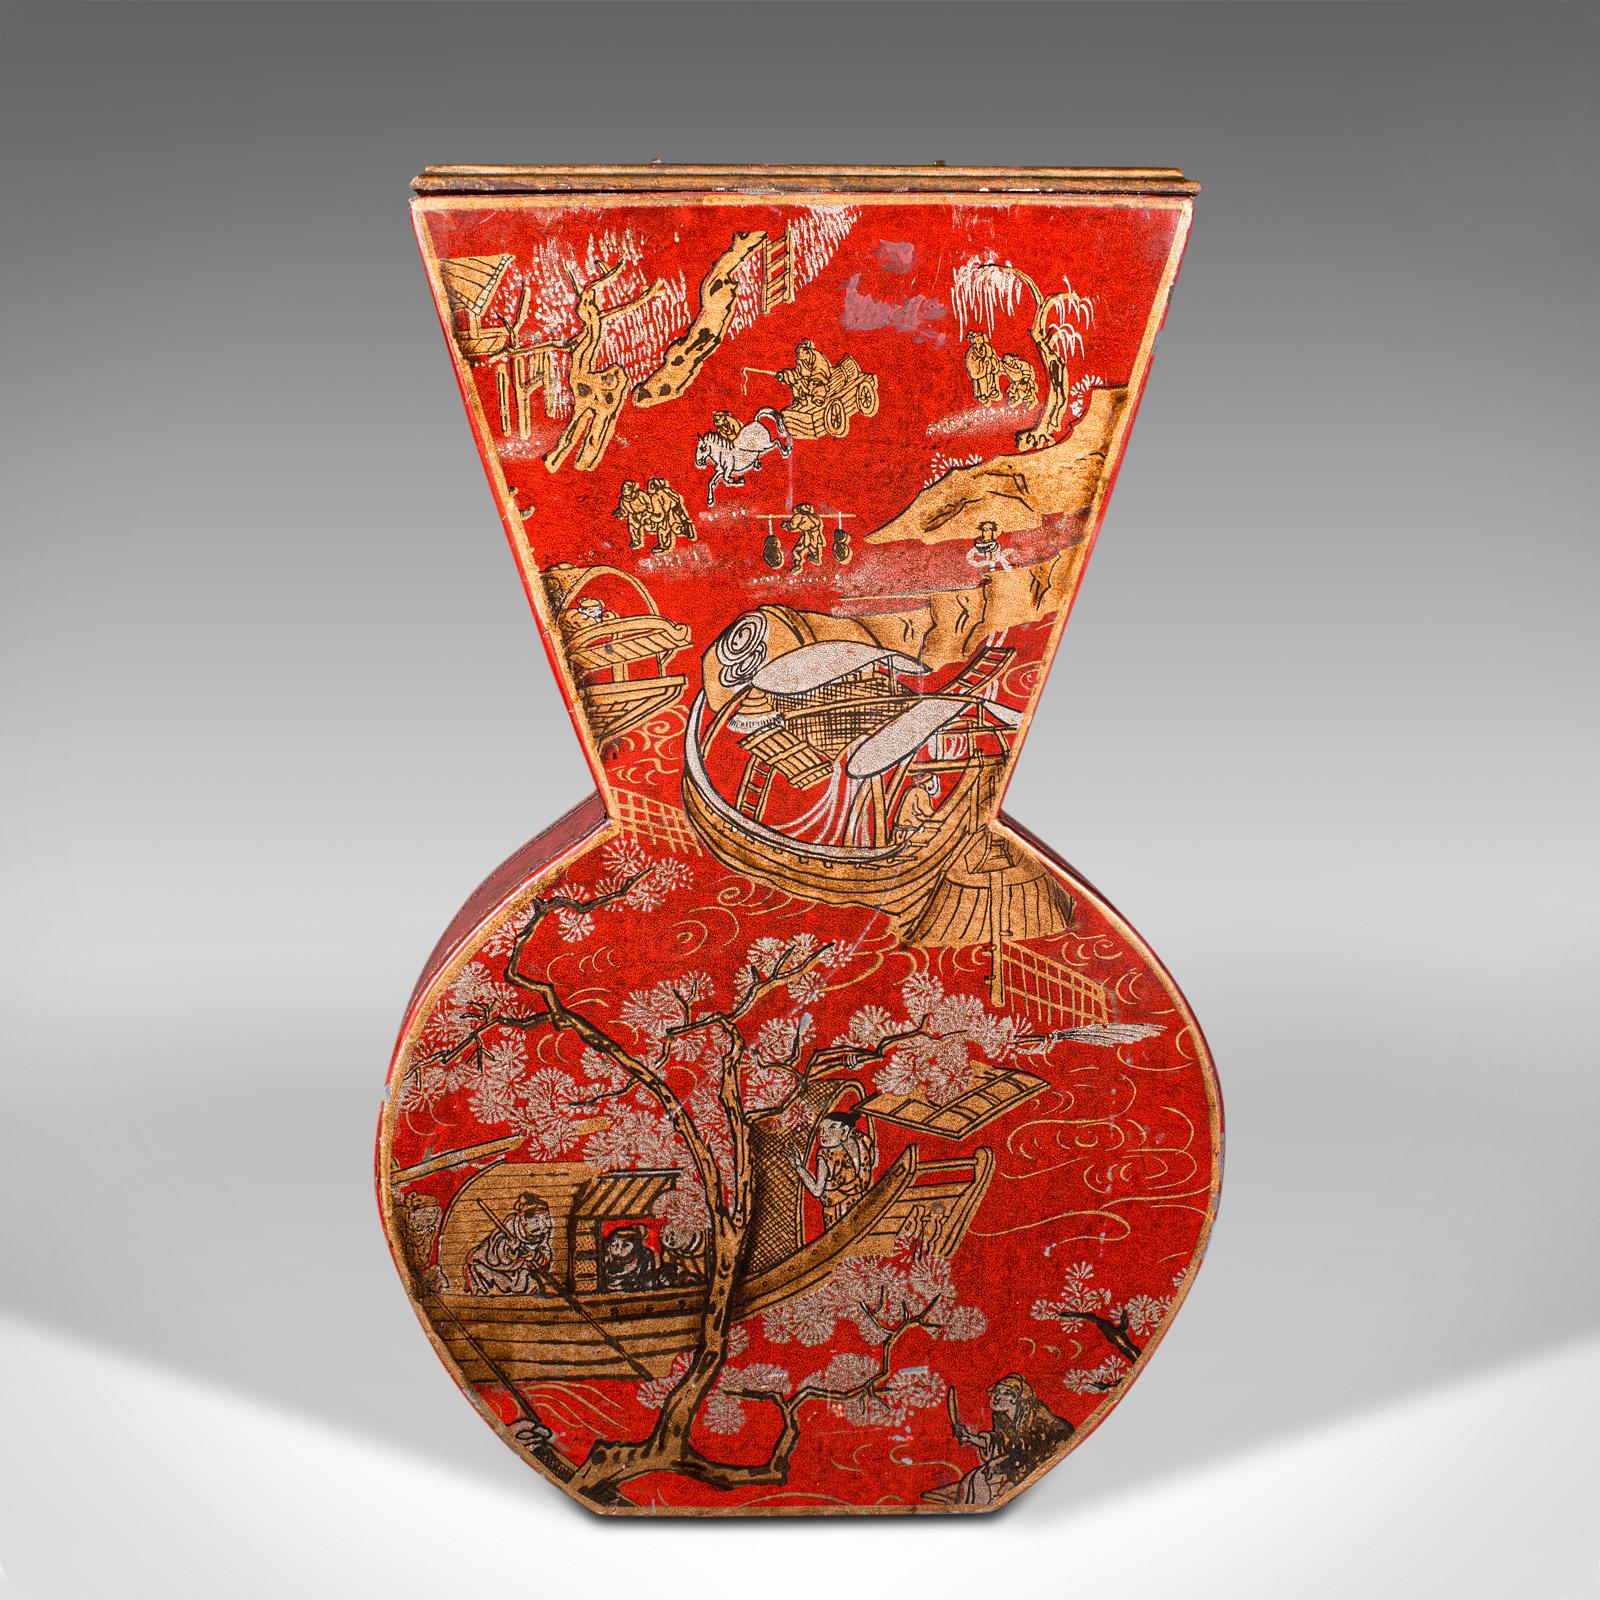 Dies ist eine Vintage-Vase für Trockenblumen. Chinesische dekorative Trommelvase aus gewachstem Papier auf Karton, aus dem späten 20. Jahrhundert, um 1970.

Auffällige Farben und vergoldetes Dekor unterstreichen den Reiz der Chinoiserie
Zeigt eine